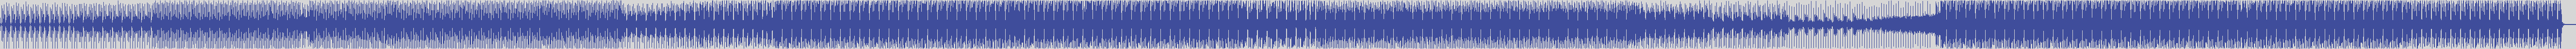 atomic_recordings [AR021] Nicola Calbi - Wind of Passion [Original Mix] audio wave form